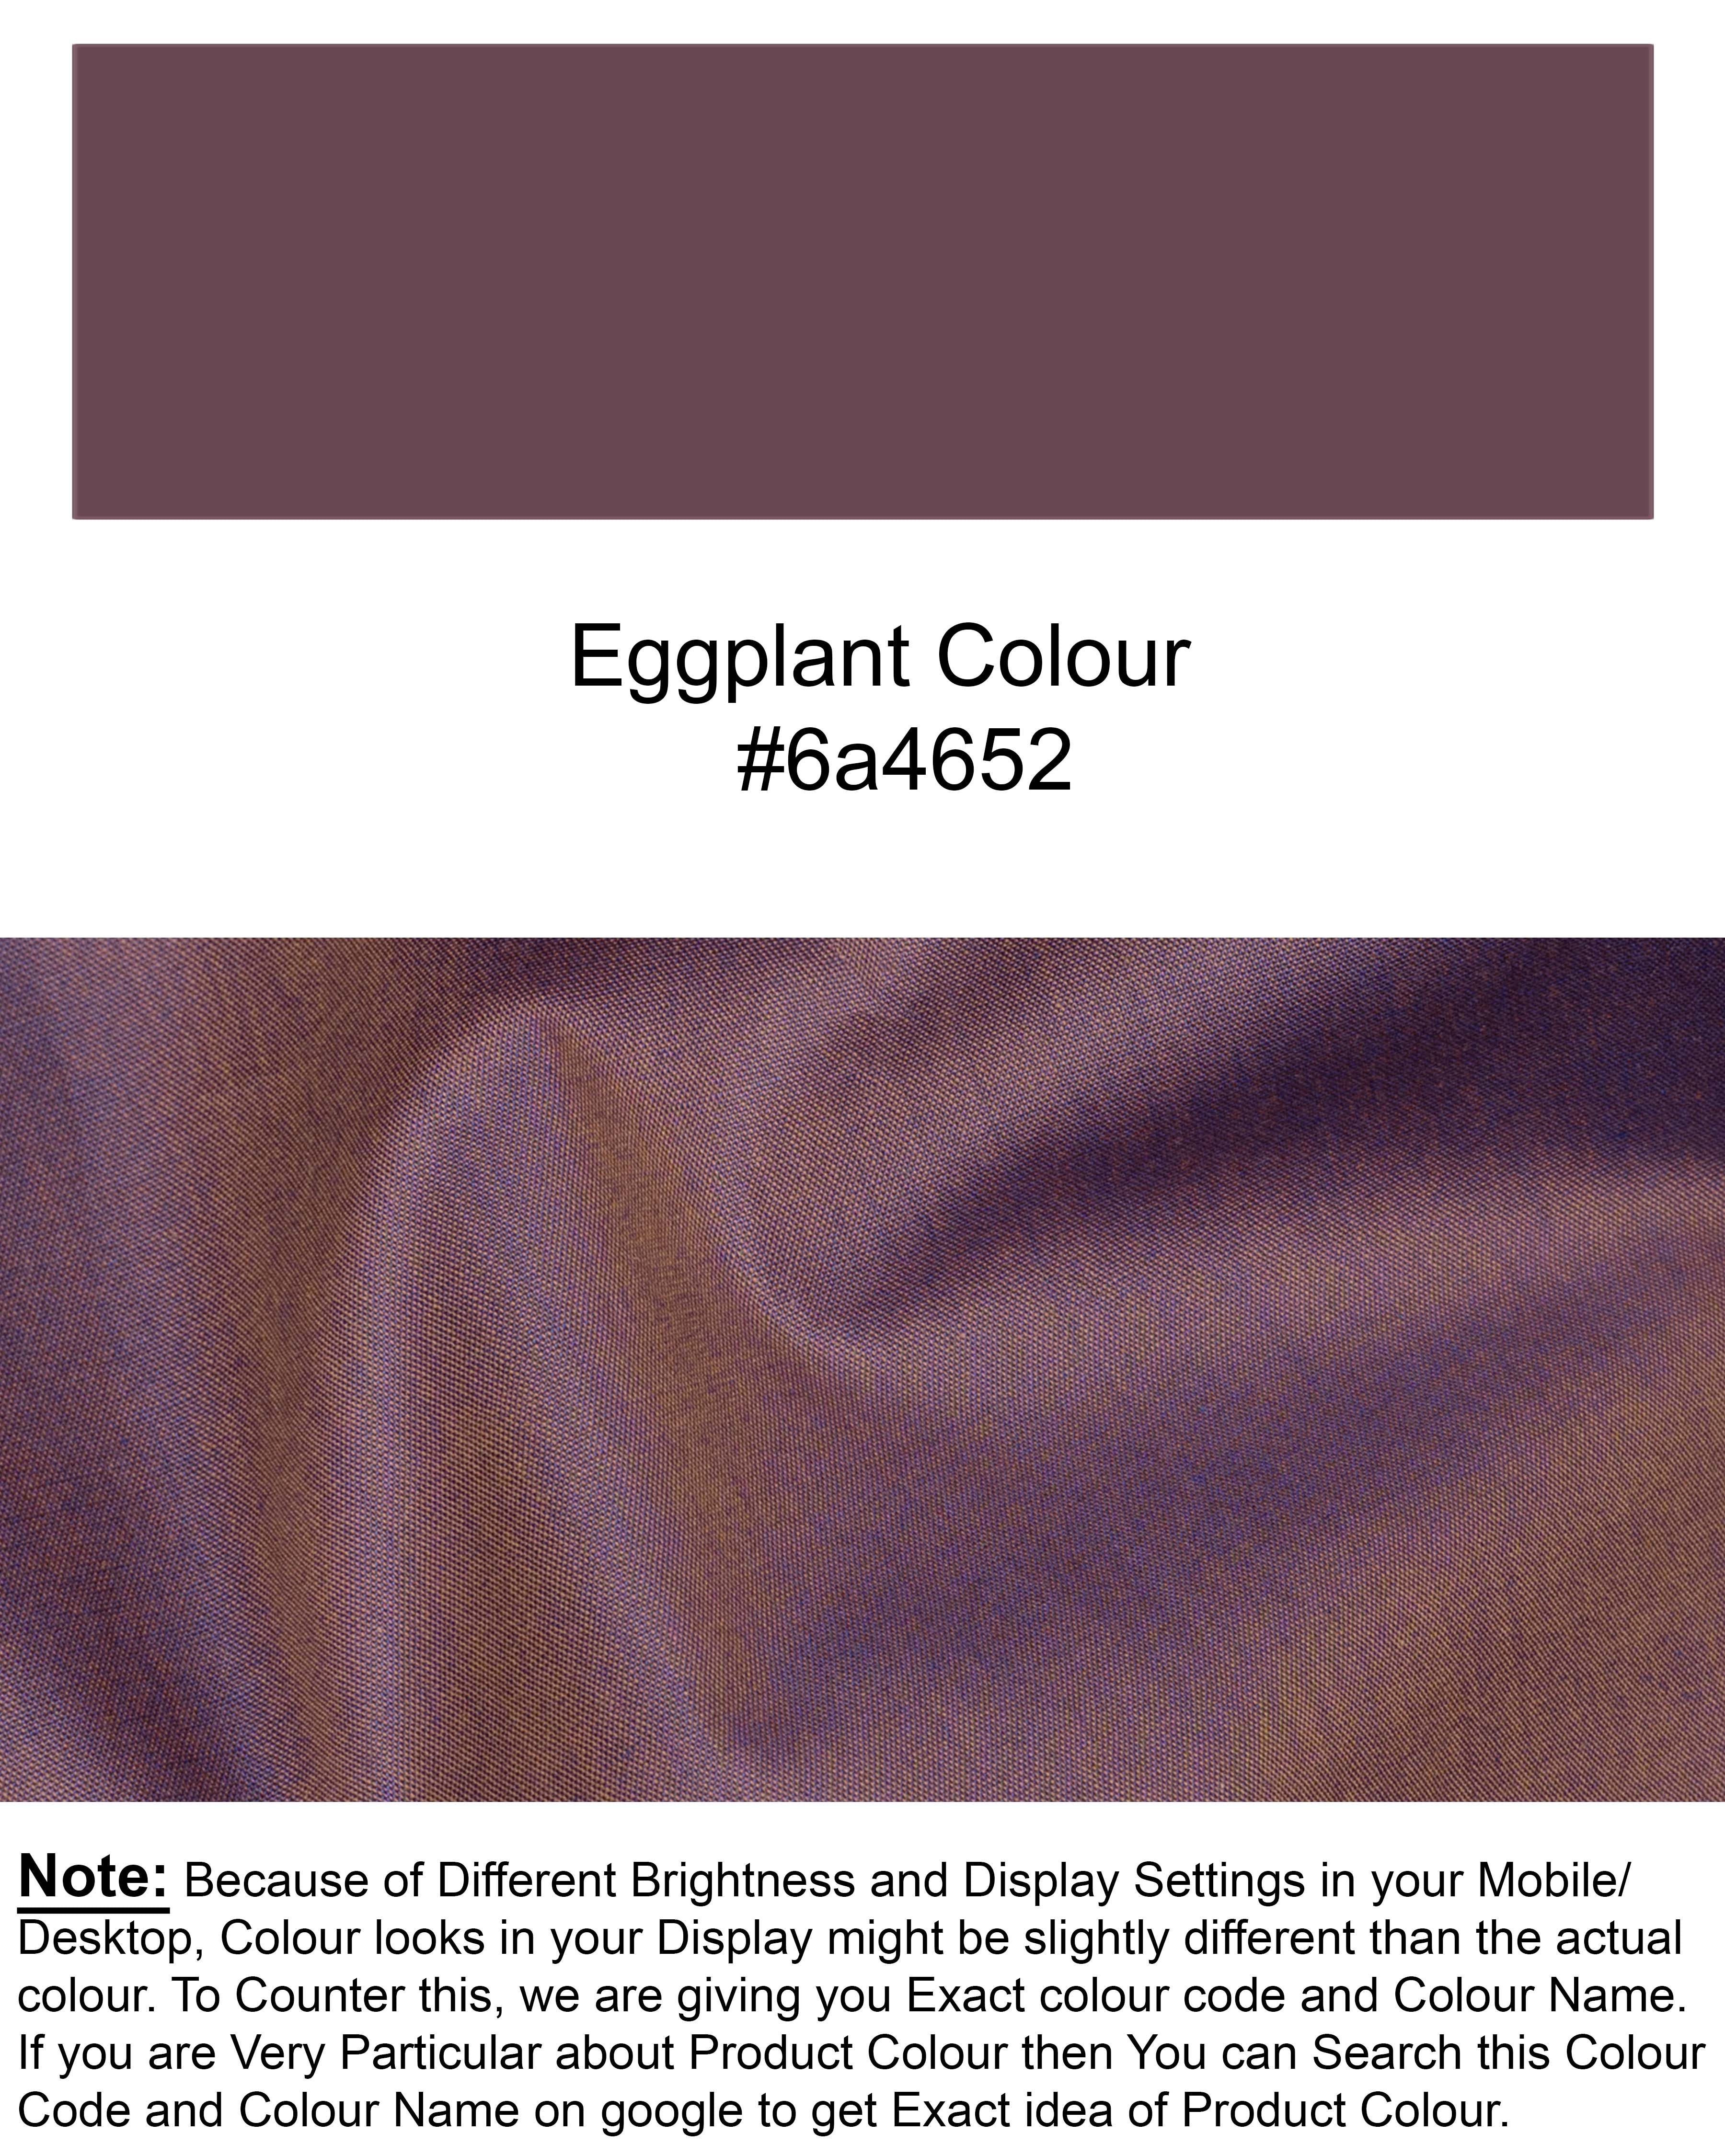 Eggplant two tone Chambray Premium Cotton Shirt 5581-KS-38, 5581-KS-H-38, 5581-KS-39, 5581-KS-H-39, 5581-KS-40, 5581-KS-H-40, 5581-KS-42, 5581-KS-H-42, 5581-KS-44, 5581-KS-H-44, 5581-KS-46, 5581-KS-H-46, 5581-KS-48, 5581-KS-H-48, 5581-KS-50, 5581-KS-H-50, 5581-KS-52, 5581-KS-H-52